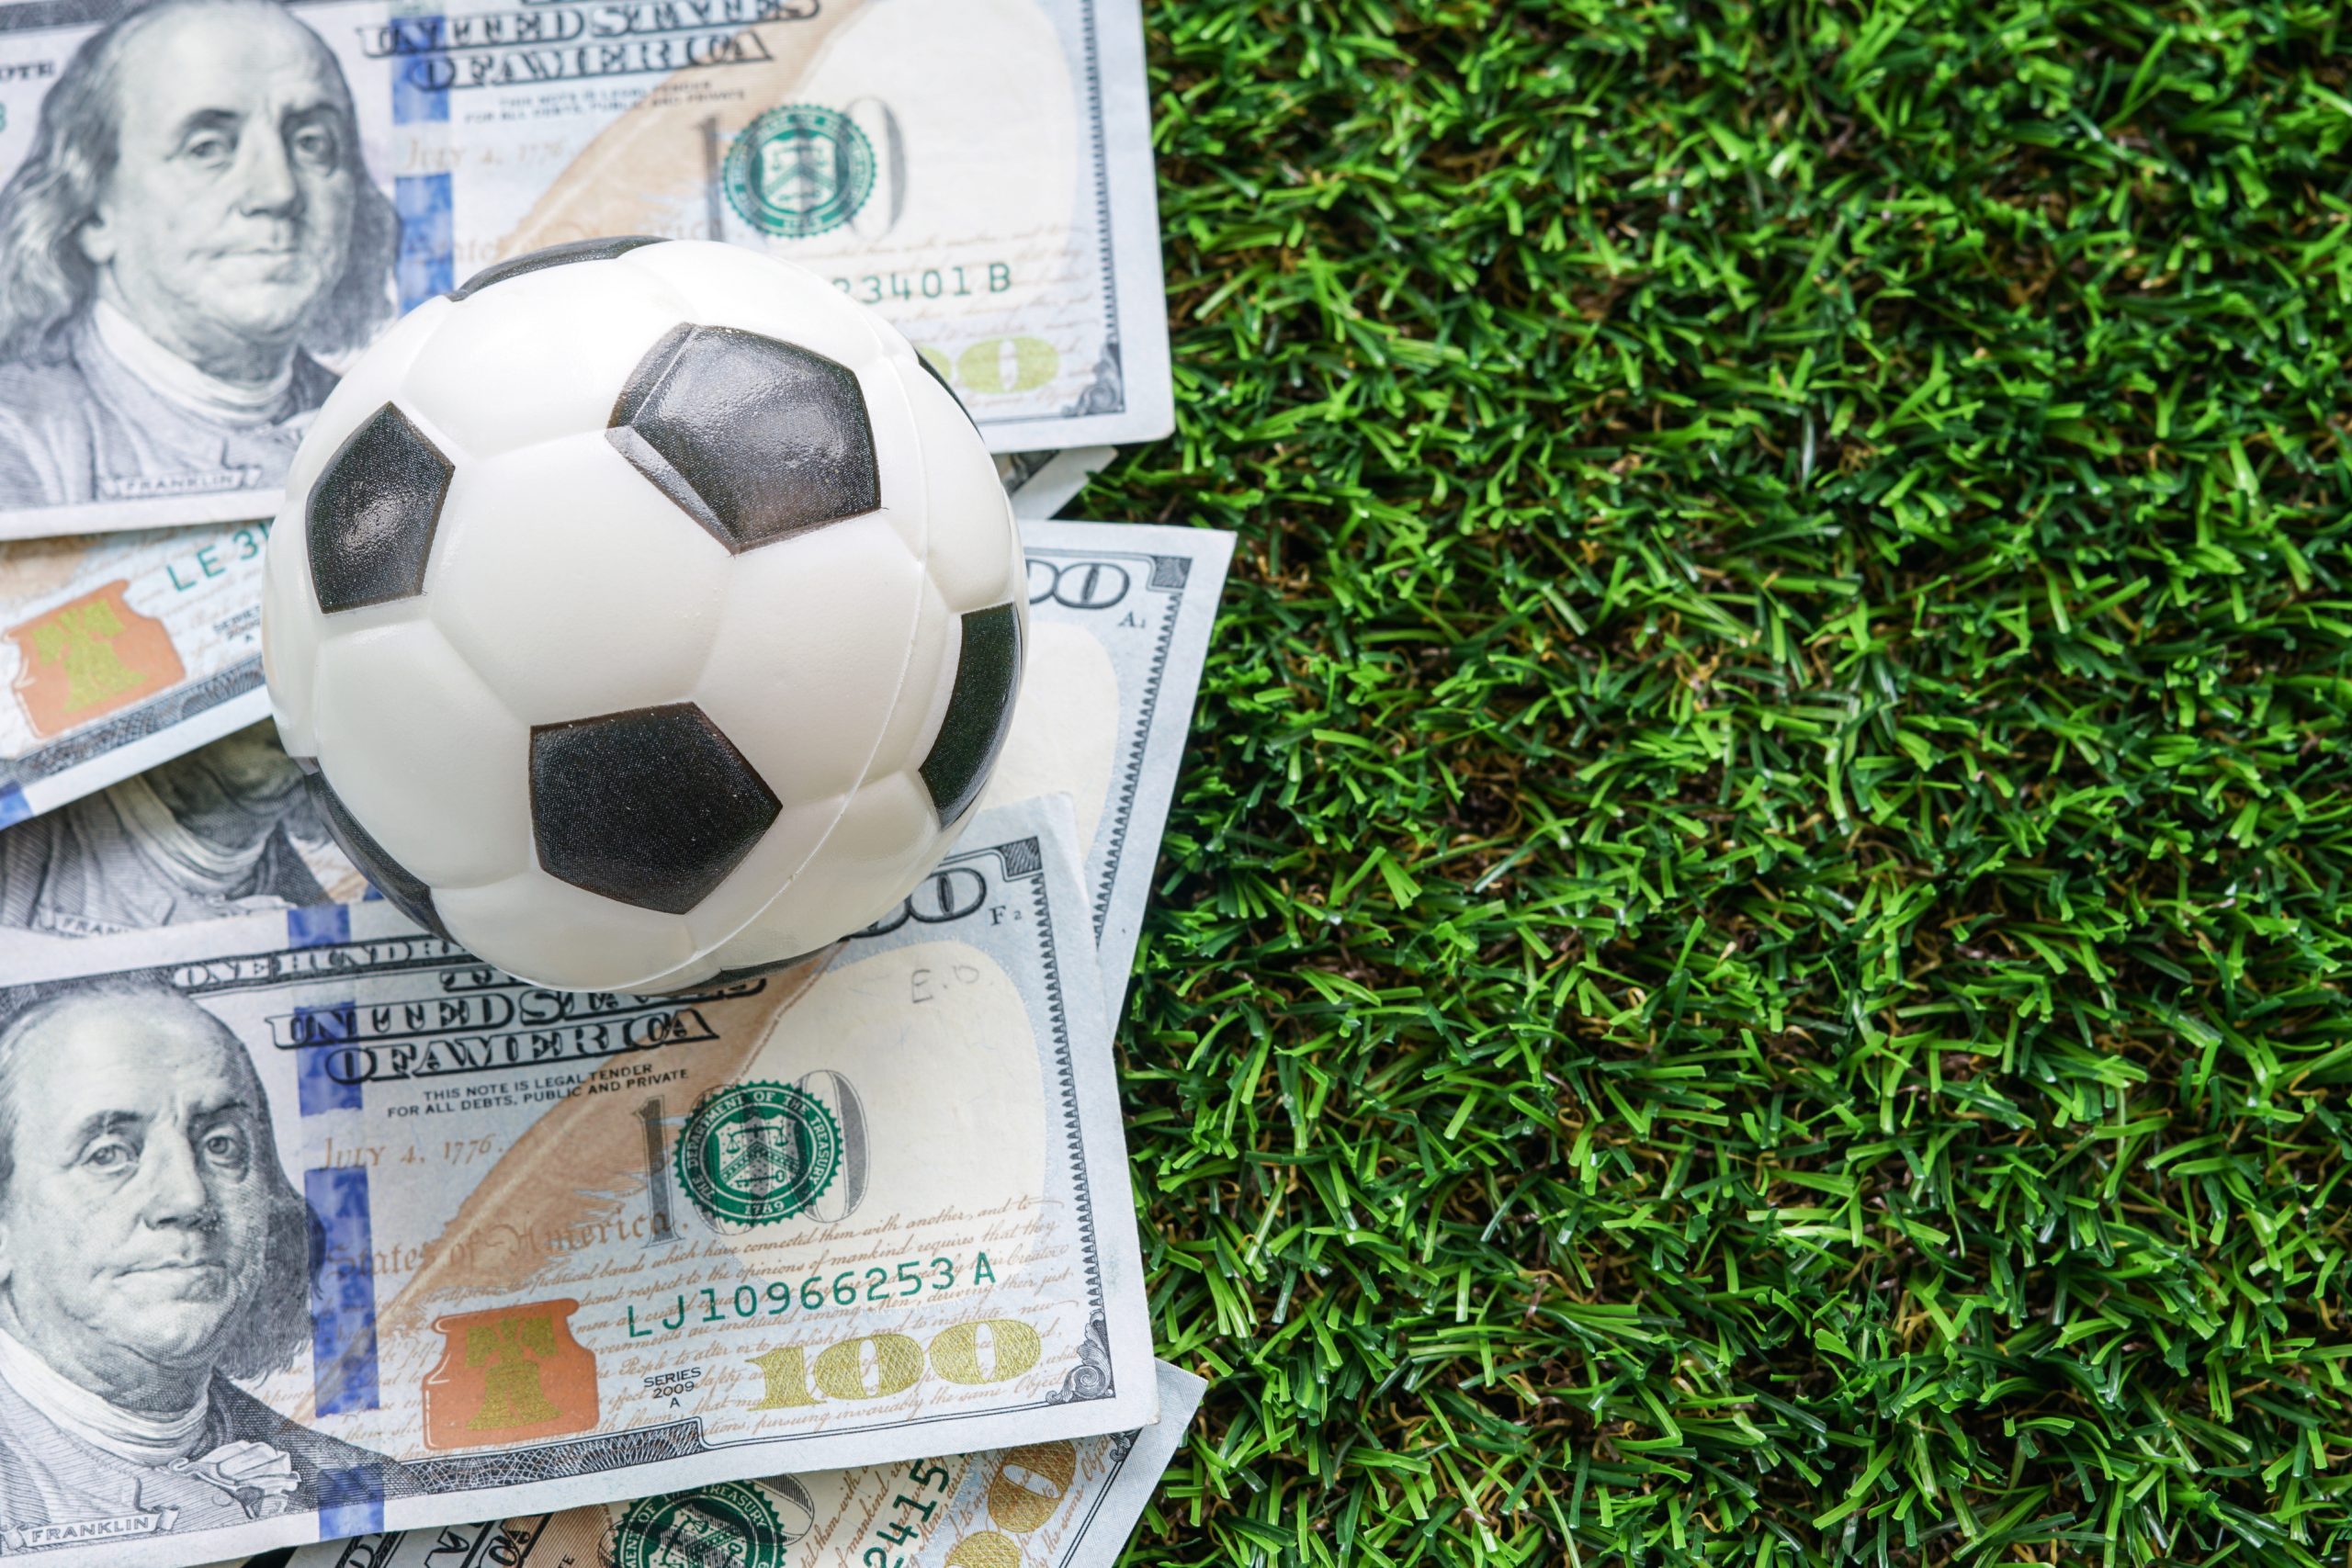 IPO de clubes de futebol na B3 pode ser realidade nos próximos 5 anos –  Mercado – Estadão E-Investidor – As principais notícias do mercado  financeiro